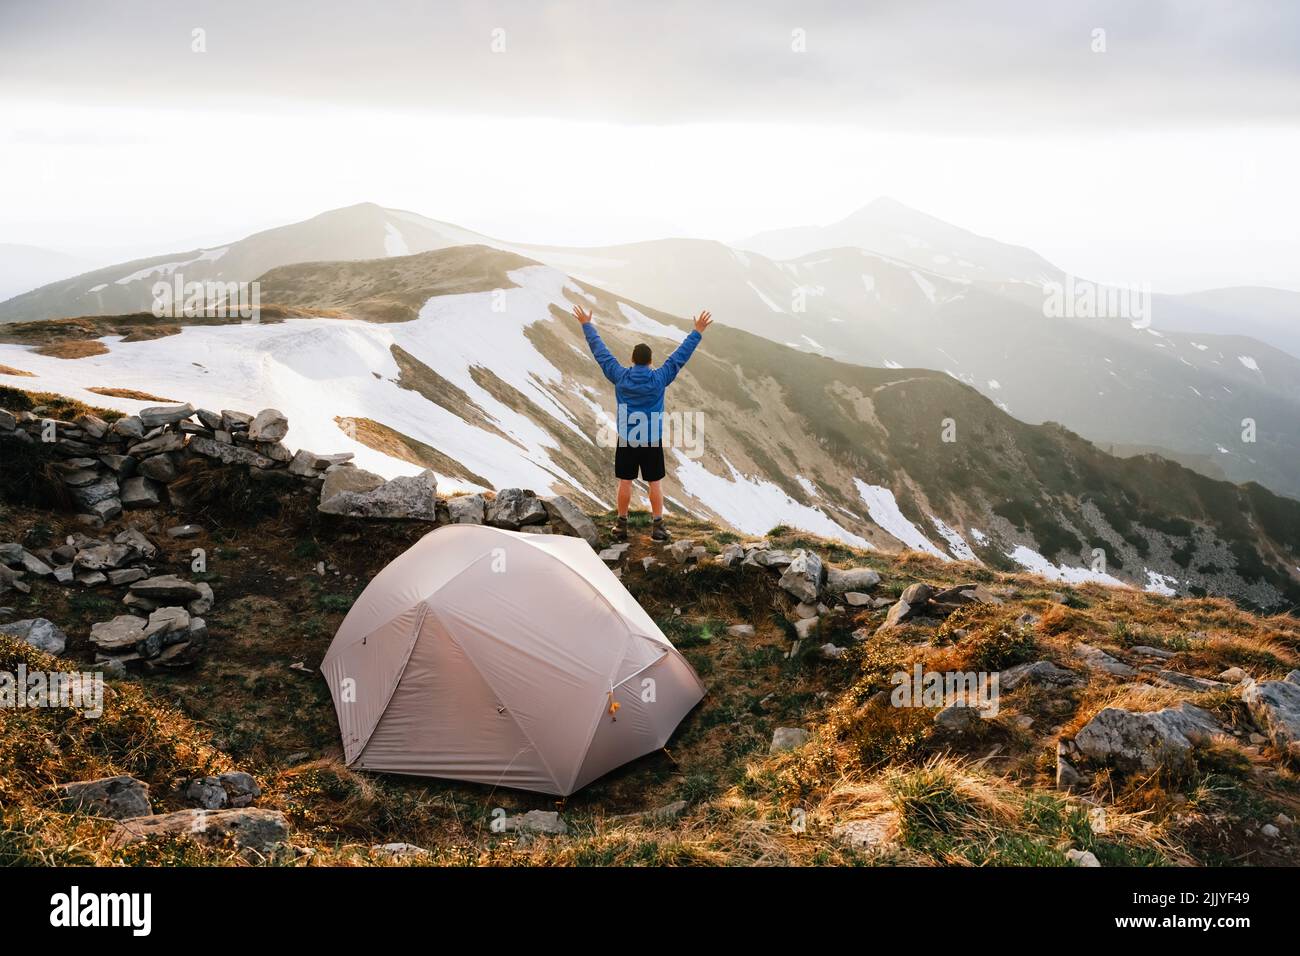 Tente grise et touriste avec la main sur le fond d'un paysage de montagne incroyable. Incroyable montagne du soir. Concept du tourisme Banque D'Images